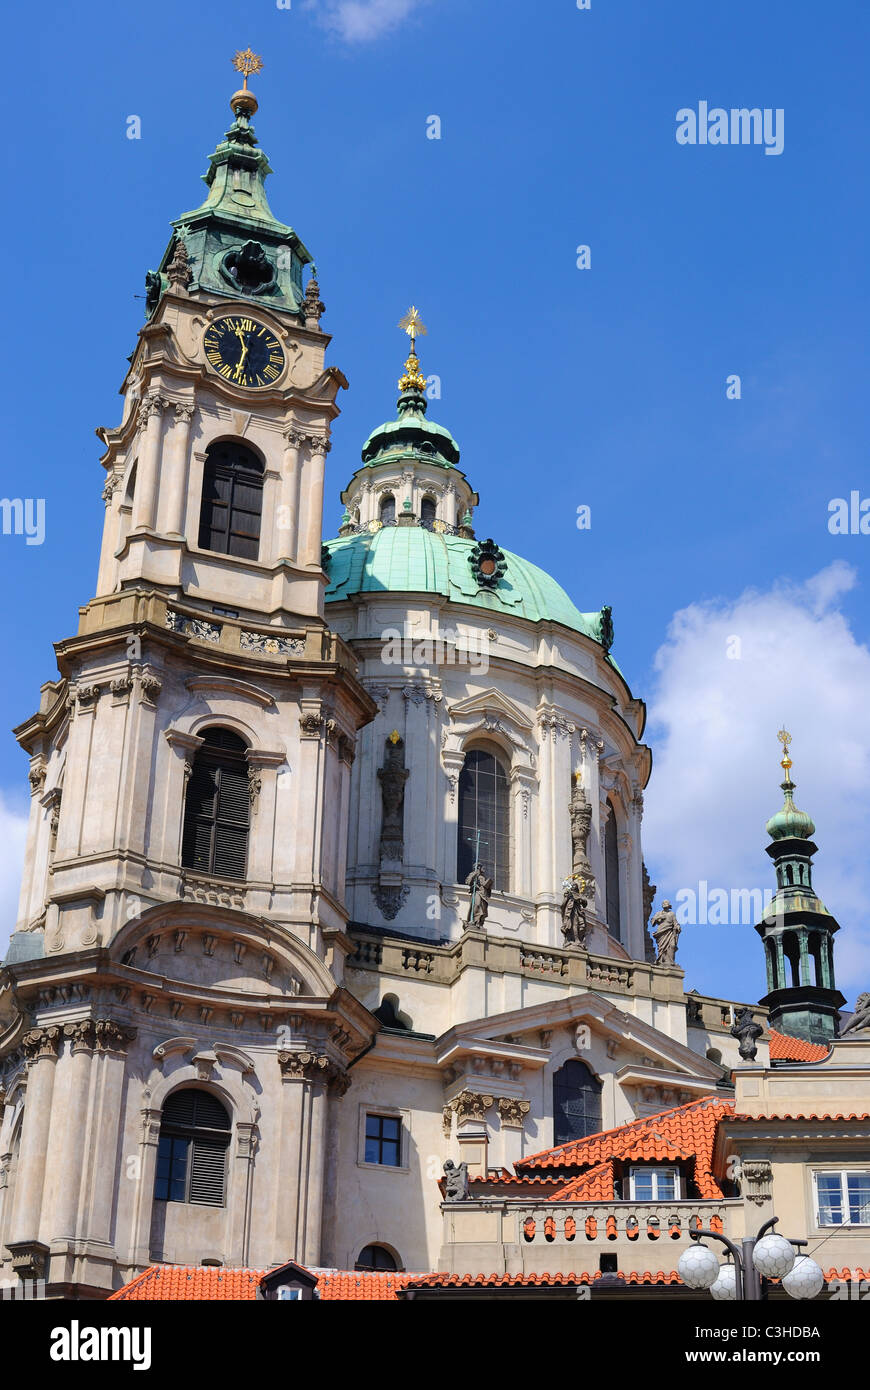 Turm und Uhr Turm der St. Nikolaus-Kathedrale in Prag, Tschechien. Stockfoto